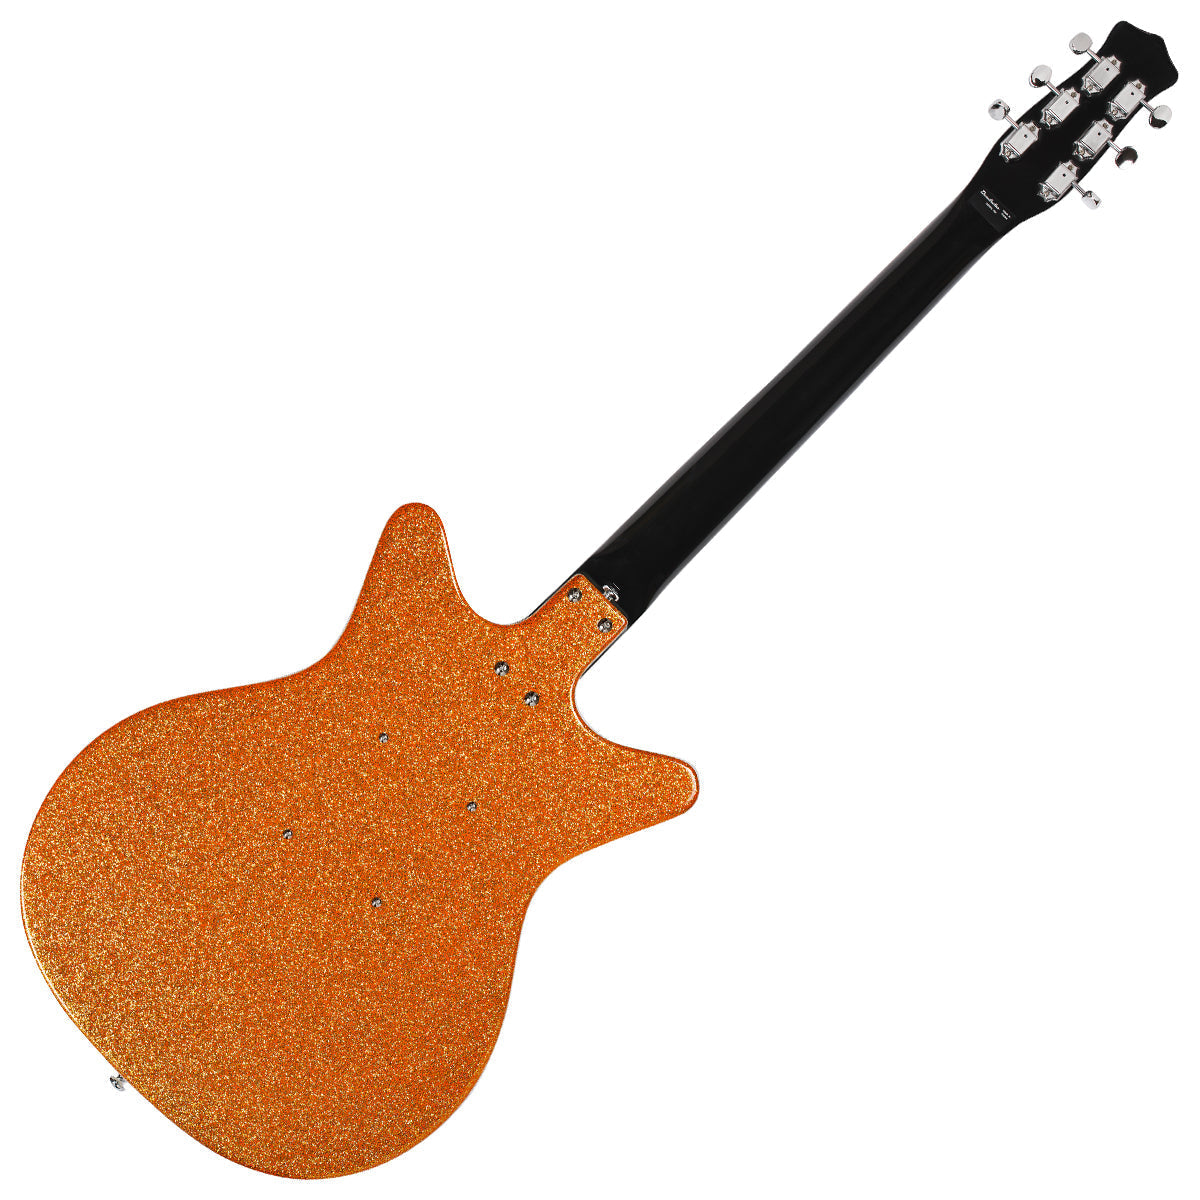 Danelectro '59M NOS Electric Guitar ~ Orange Metal Flake, Electric Guitar for sale at Richards Guitars.